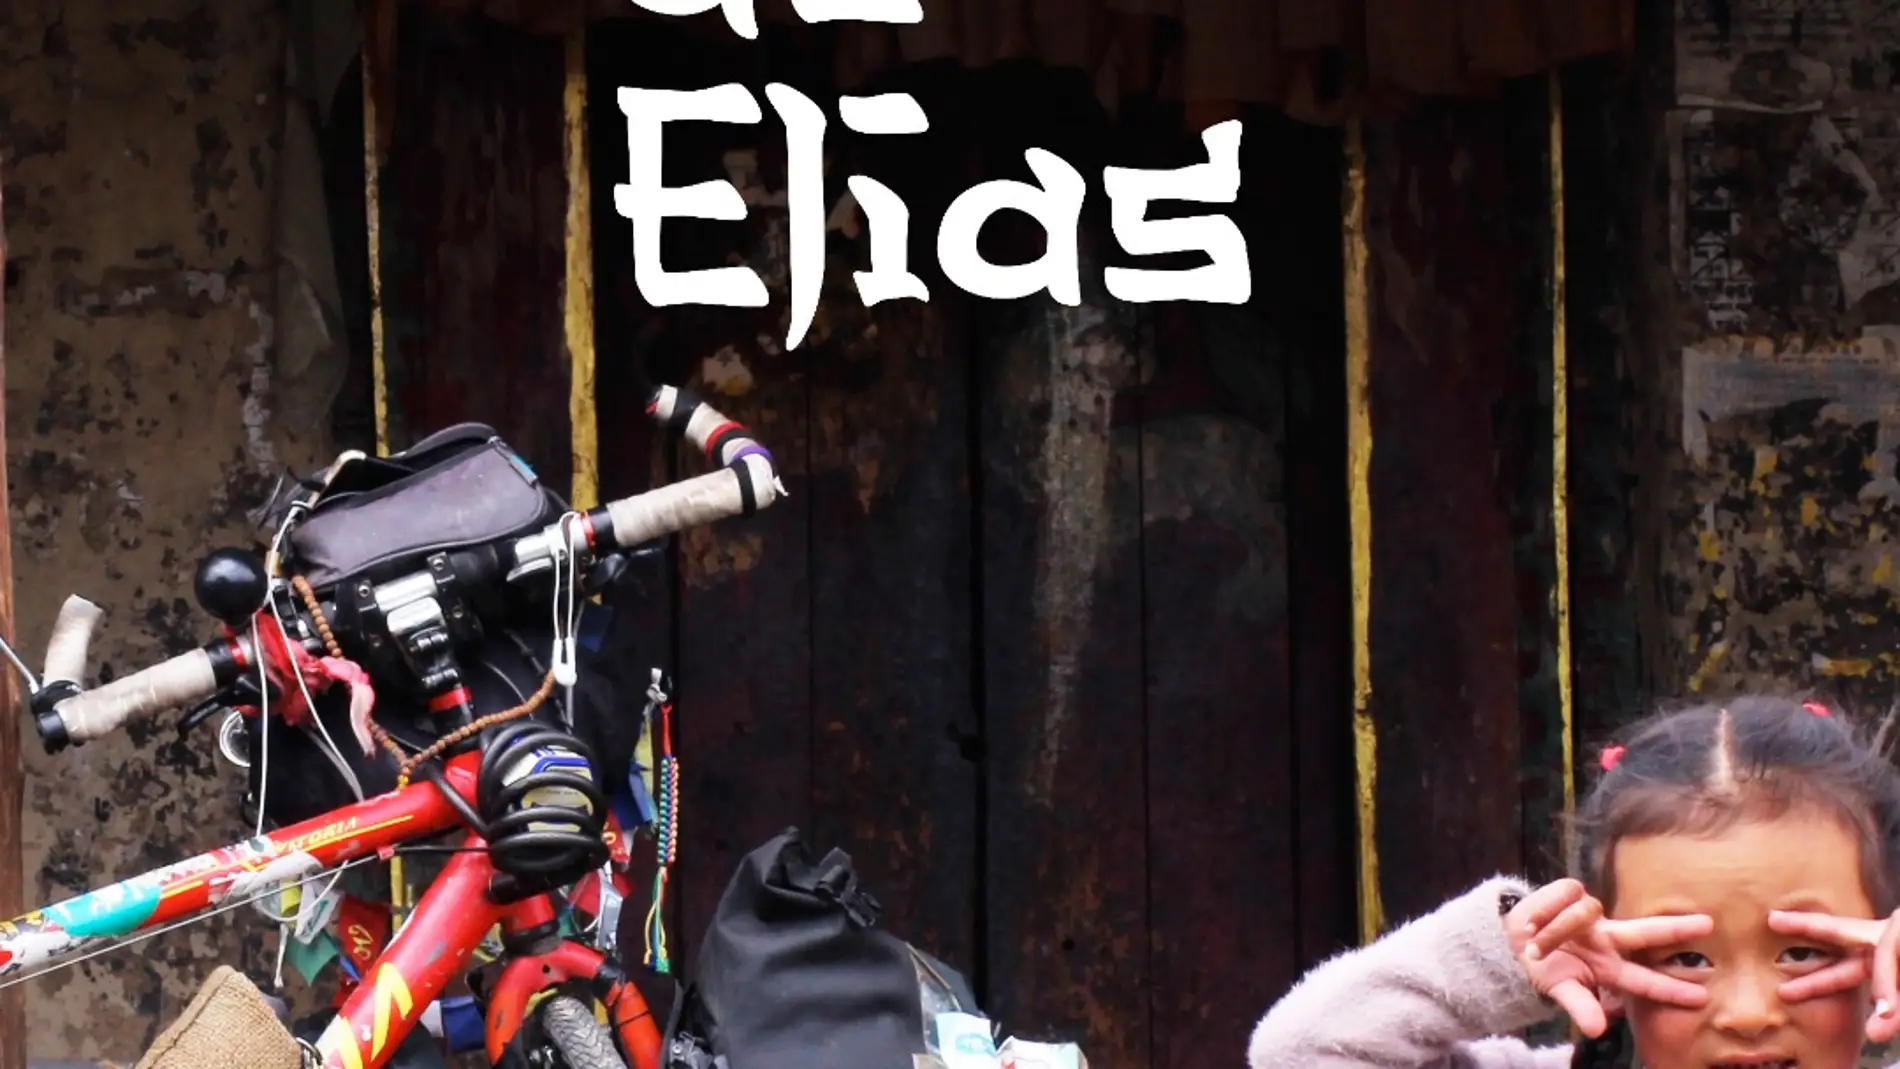 El documental “El viaje de Elias”, será presentado en el Auditorio Municipal